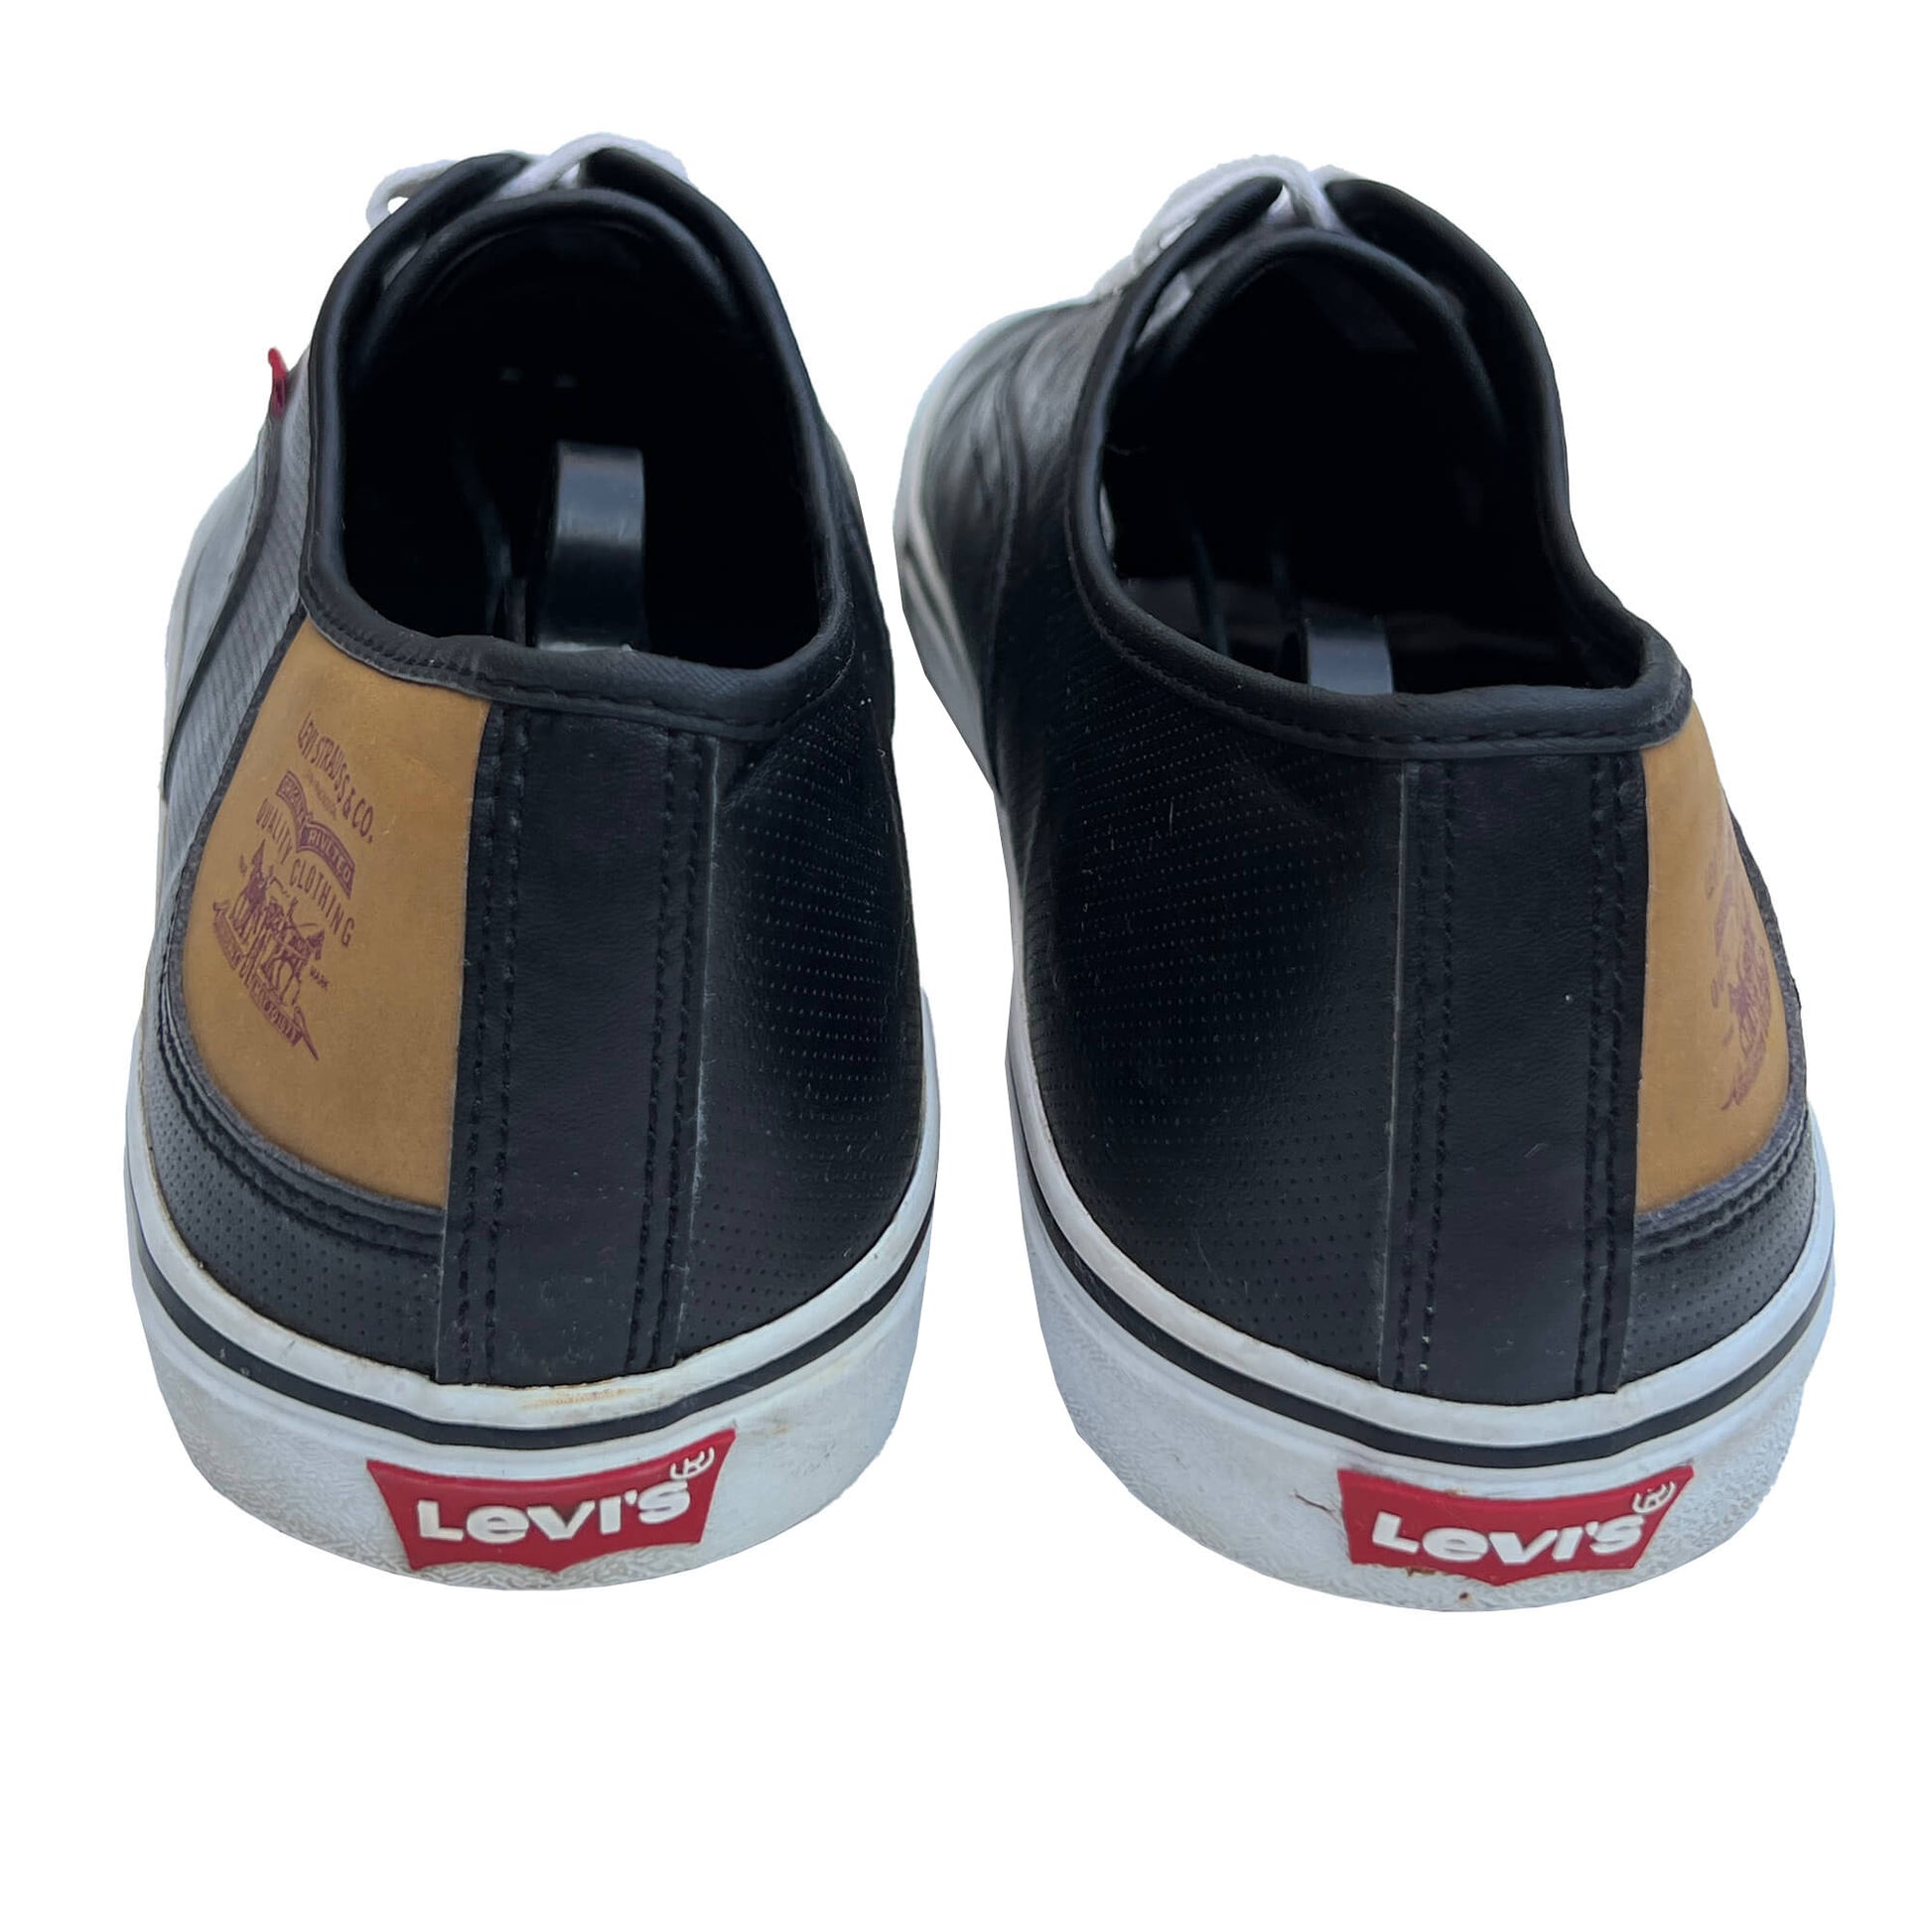 Levi_s-Men_s-Black-Leather-Sneakers.-Size-13.-Shop-eBargainsAndDeals.com